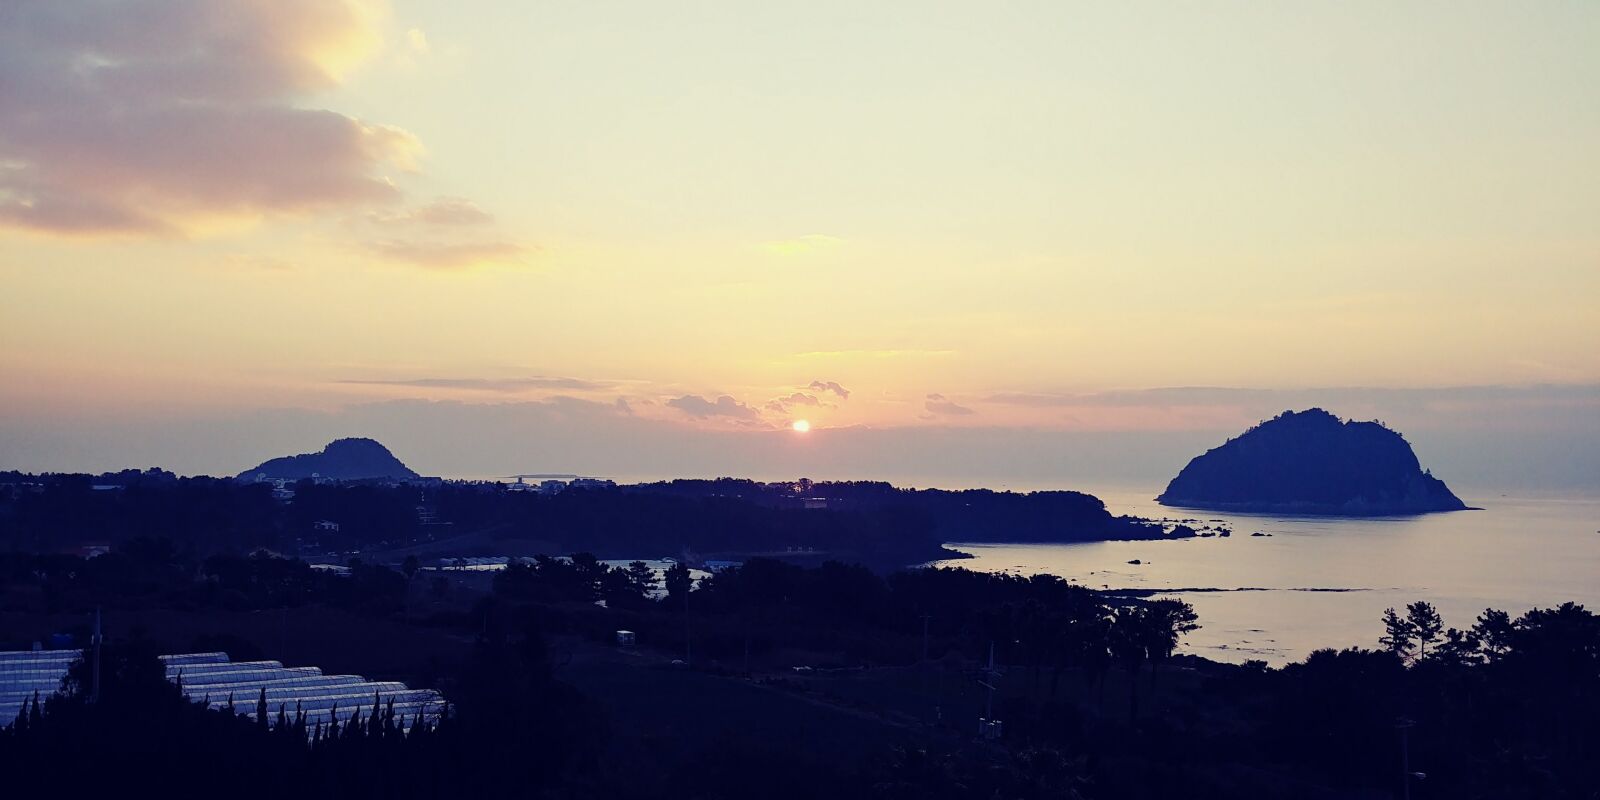 LG G6 sample photo. Sunrise, sea, morning photography